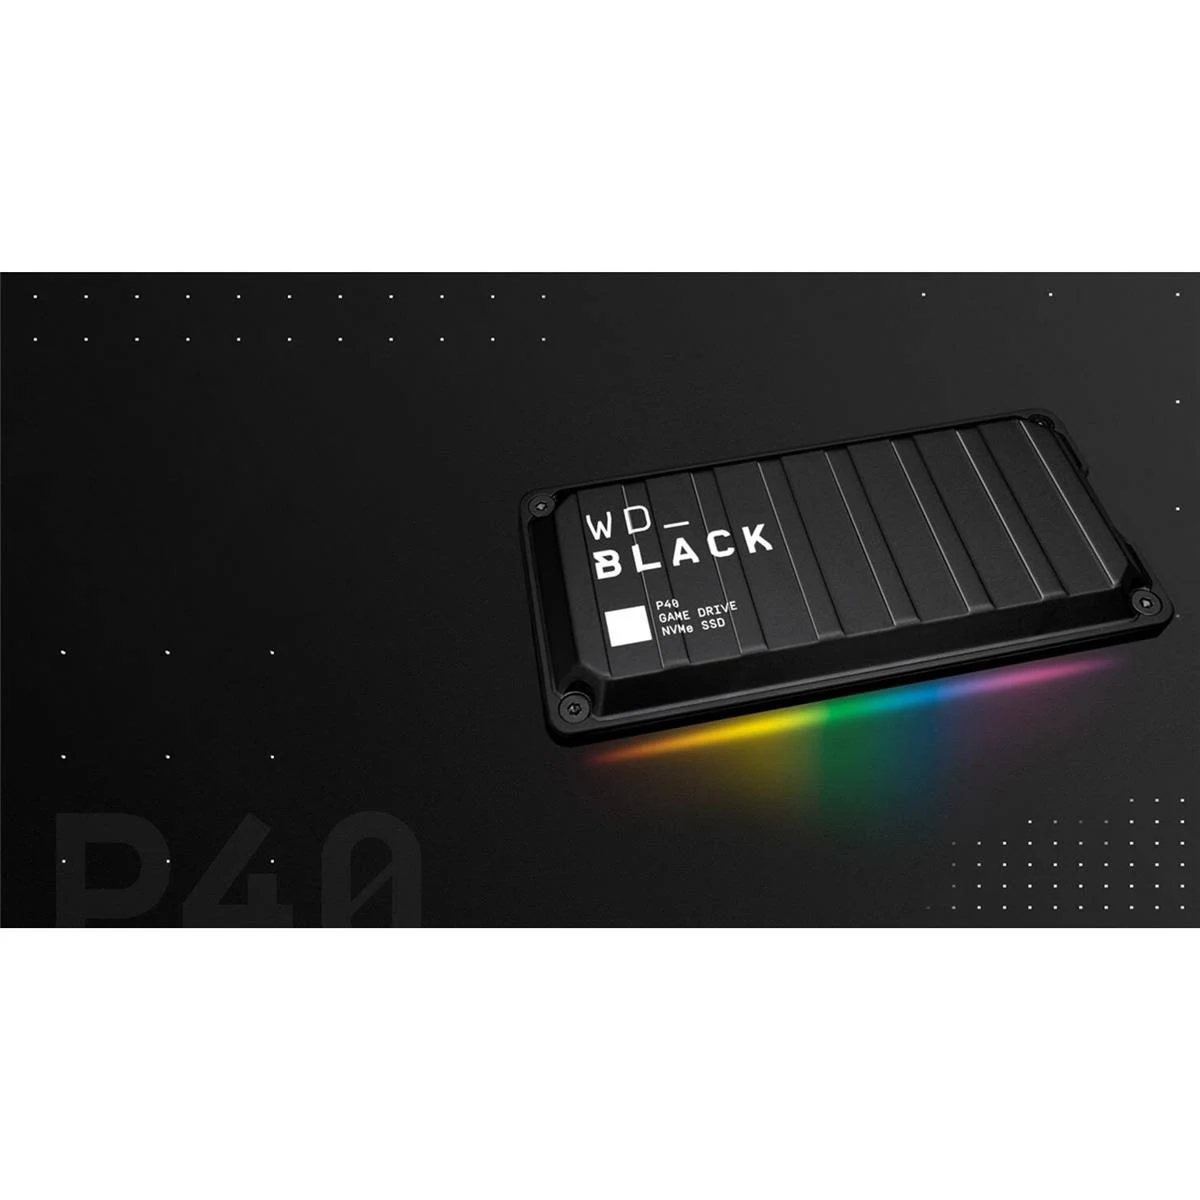 SANDISK WDBAWY5000ABK-WESN WD_BLACK Zoll, GAME GB DRIVE SSD, 500 2,5 extern, Schwarz P40 500GB S